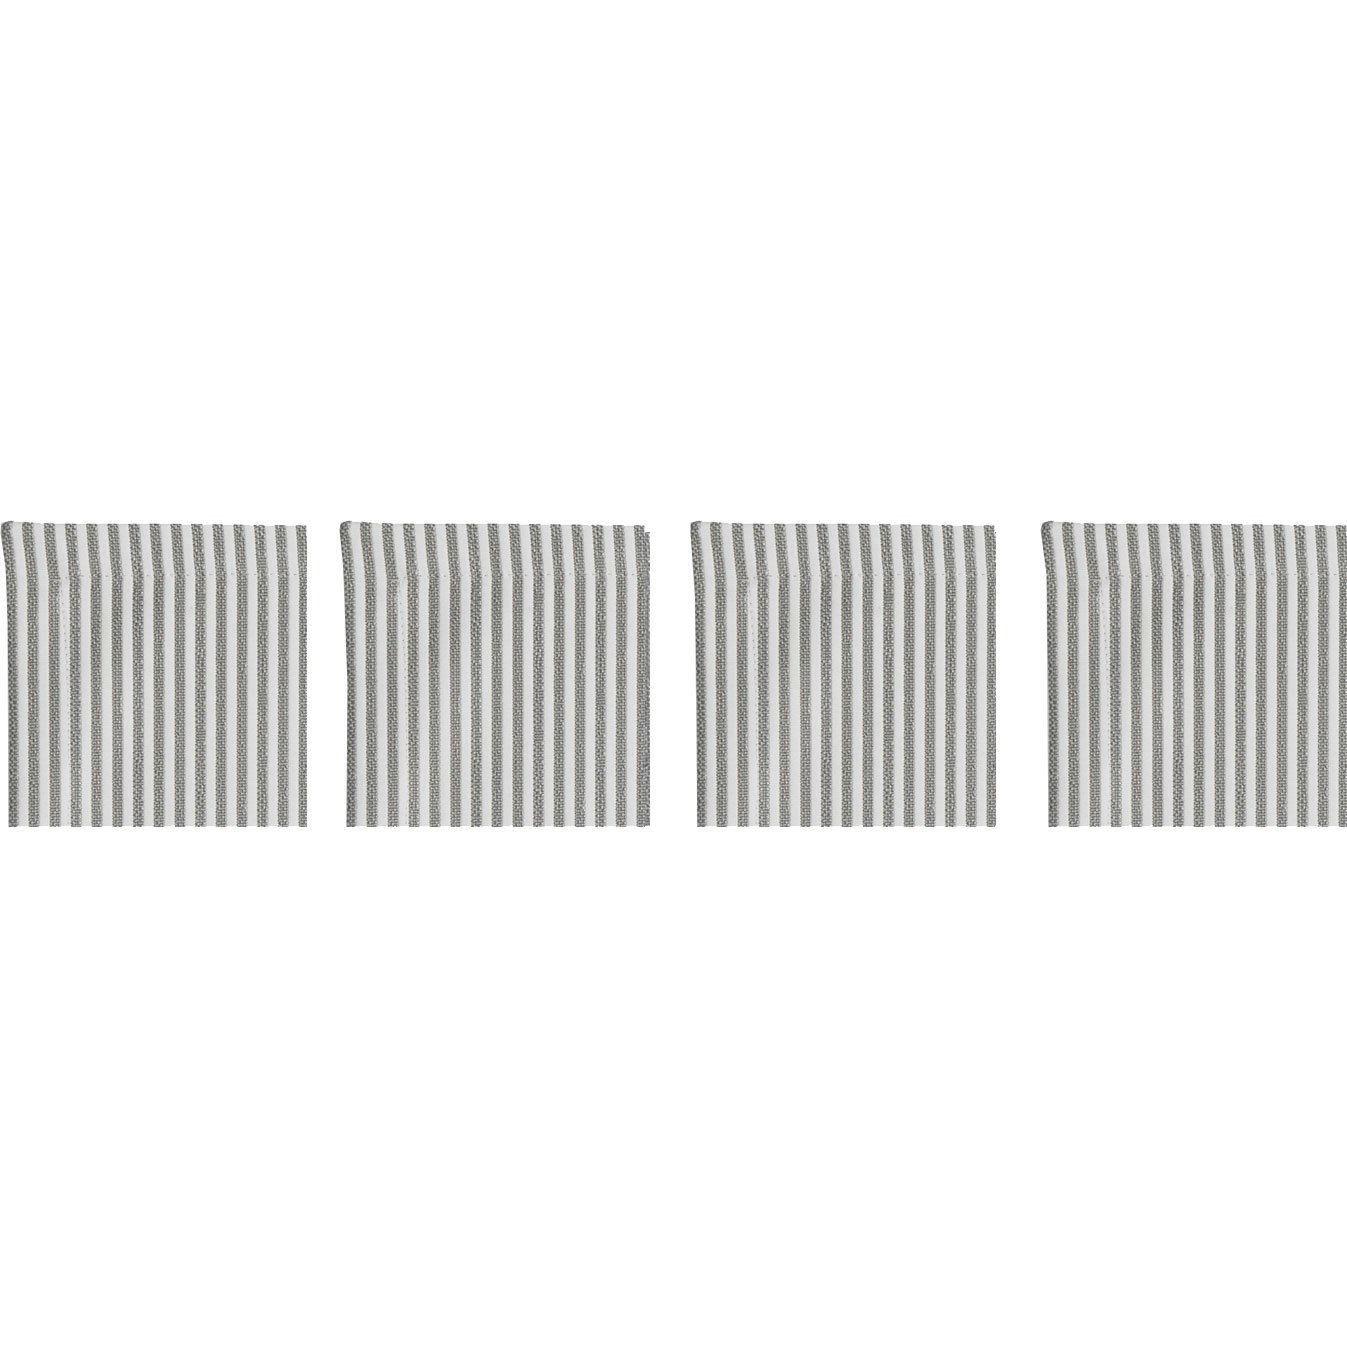 Narrow Stripe Lasinaluset 10x10 cm 4-pakkaus, Harmaa